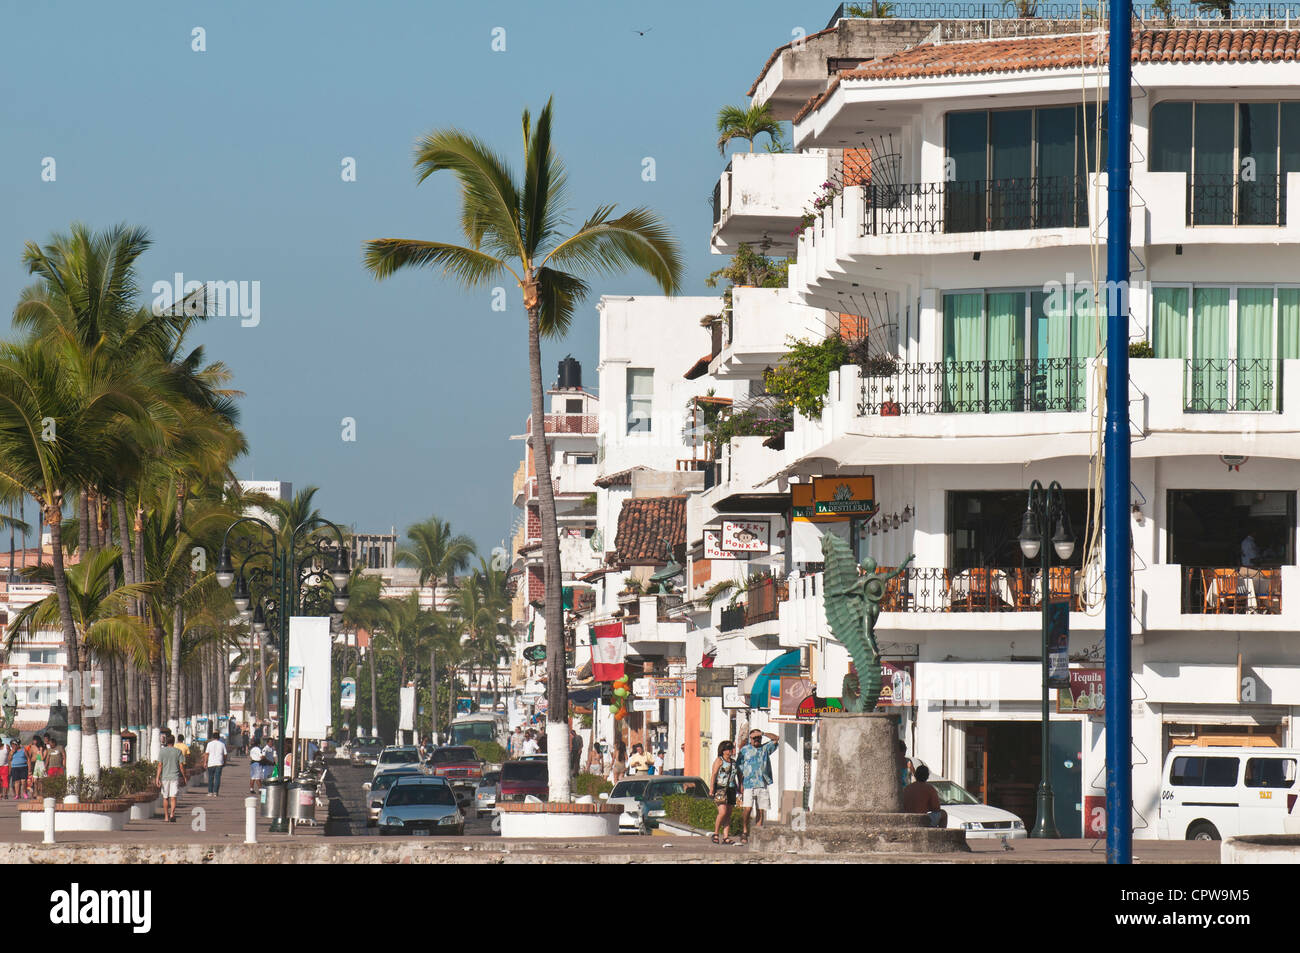 Mexiko, Puerto Vallarta. Der Malecon, Puerto Vallarta, Mexiko. Stockfoto